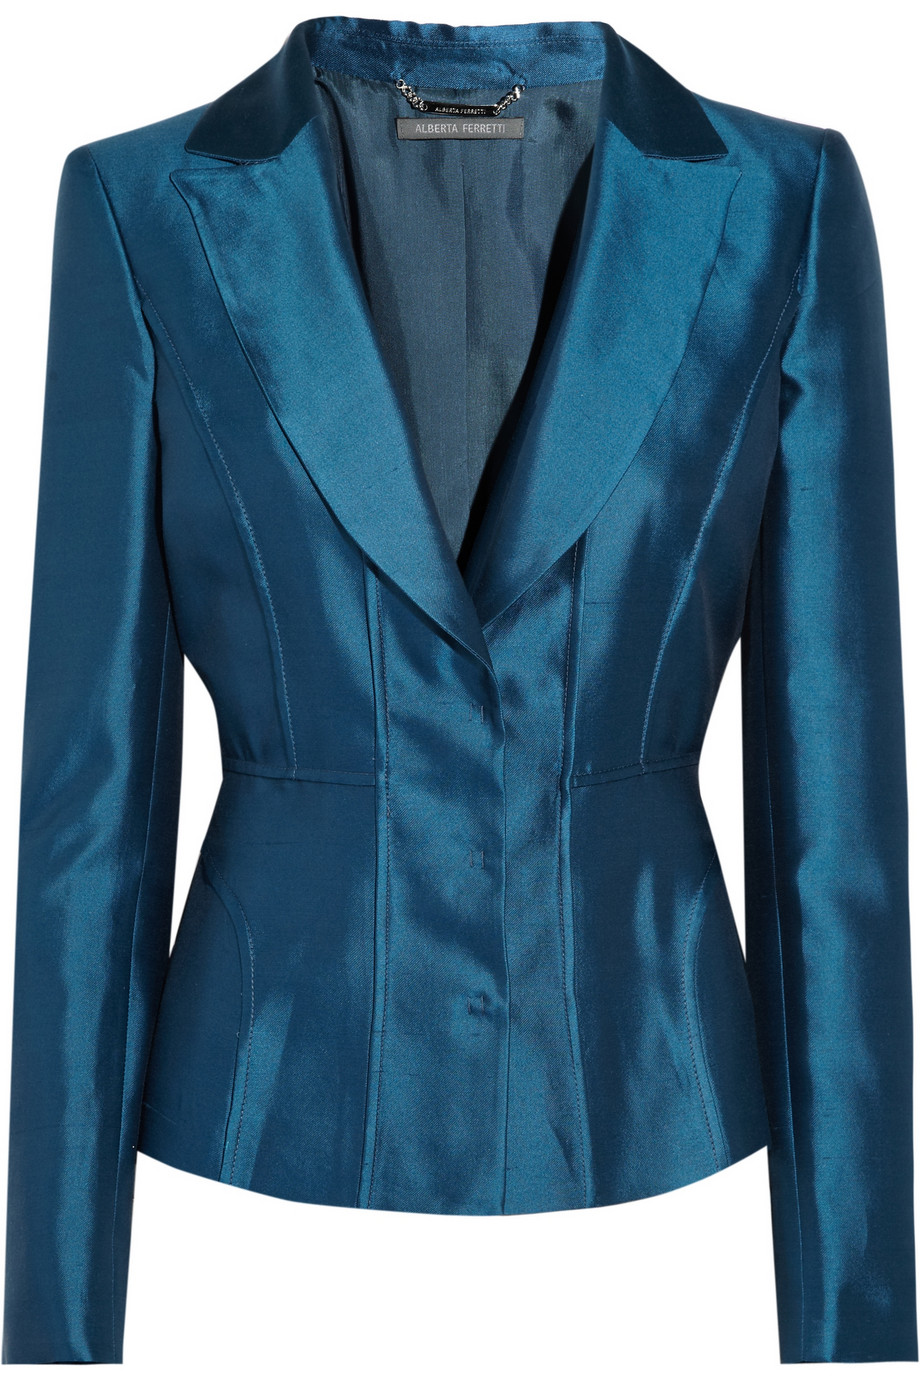 Alberta ferretti Shantung Silk-blend Blazer in Blue | Lyst